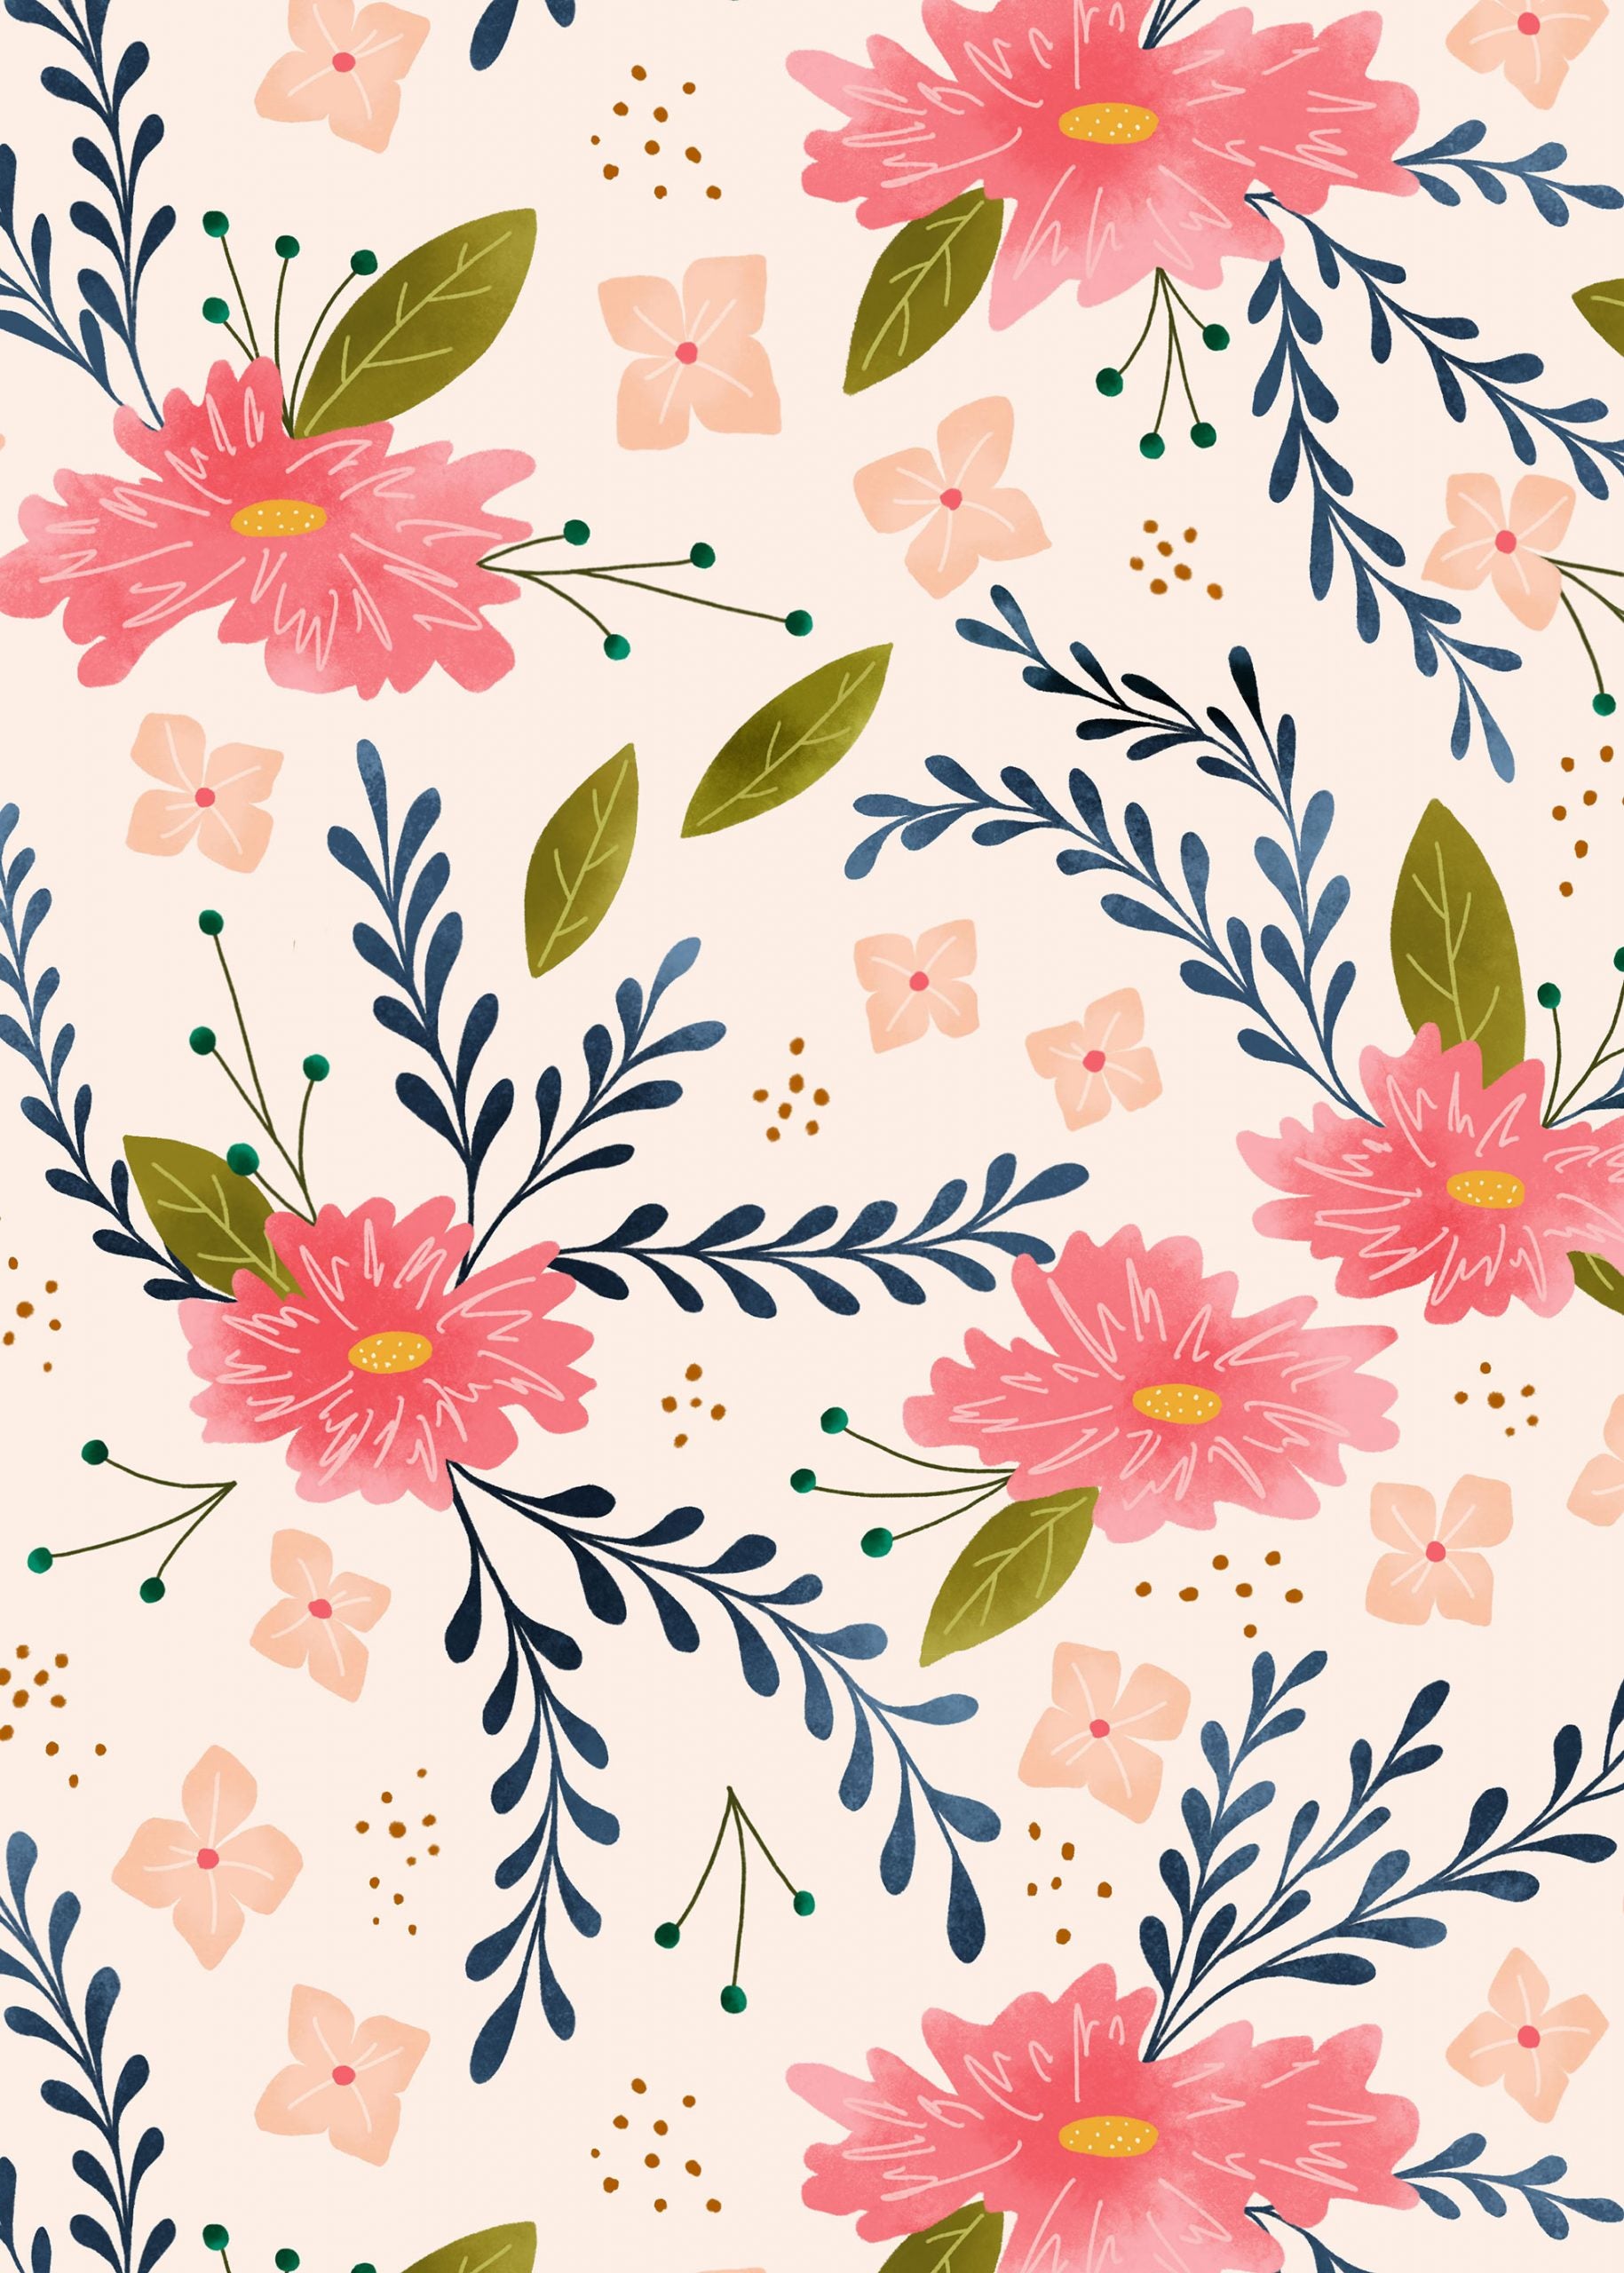 Bloom floral wallpaper - free download for desktop, tablet and phone